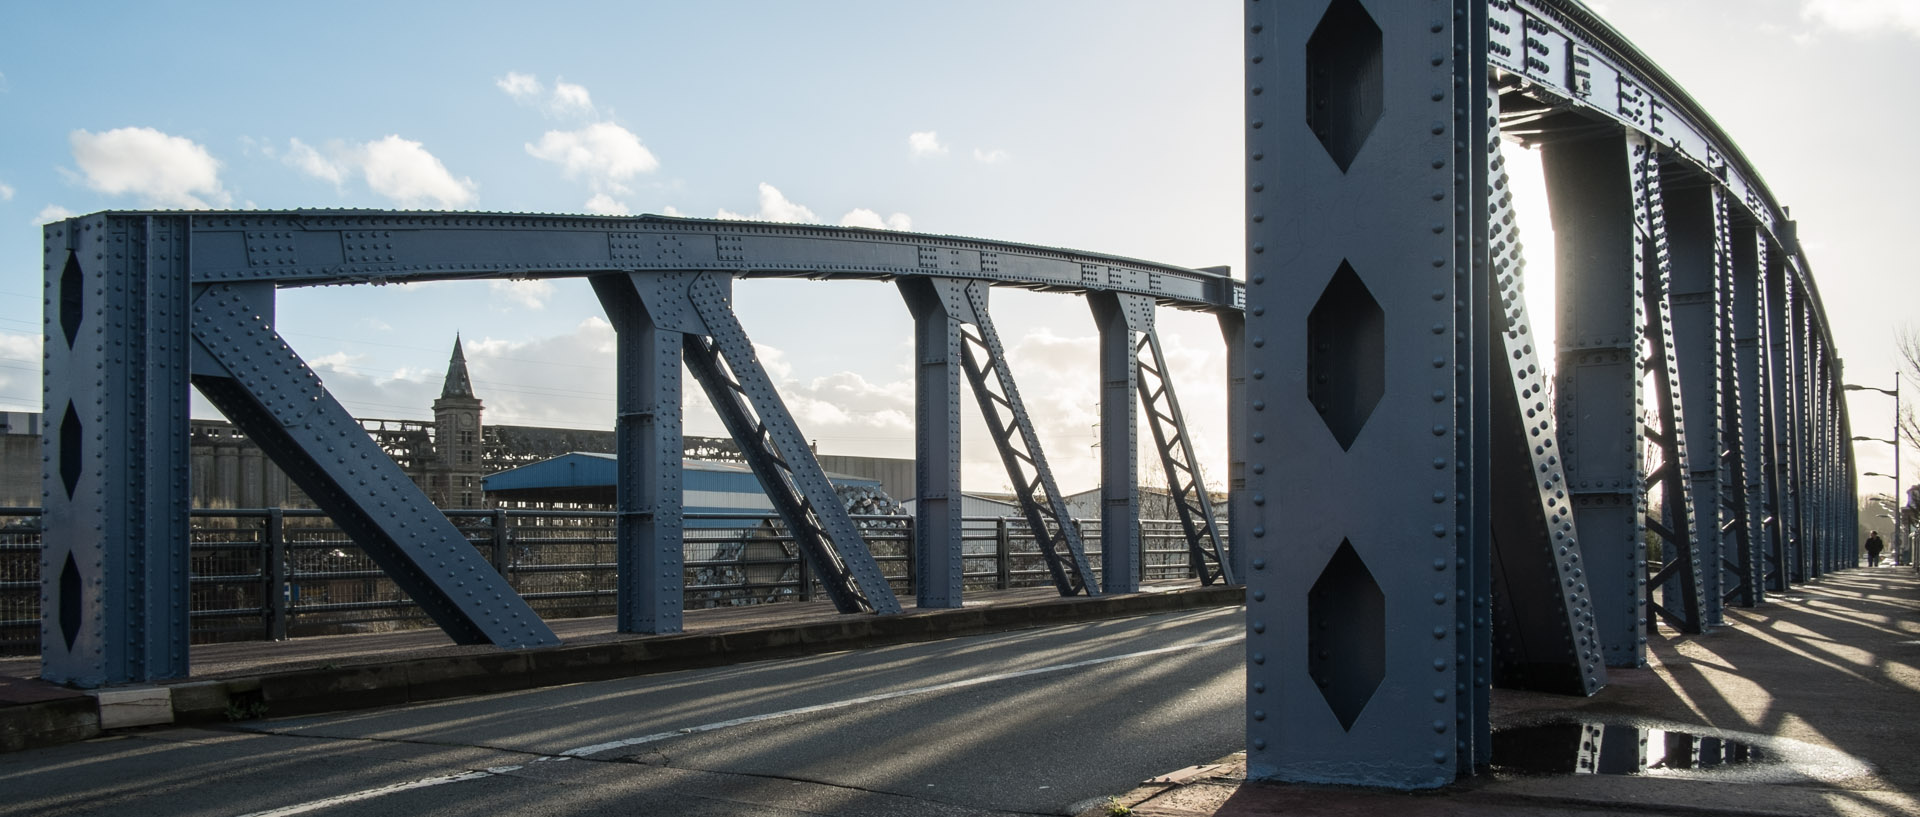 Vendredi 7 février 2014, 16:35, pont Pasteur sur la Deûle, Marquette lez Lille